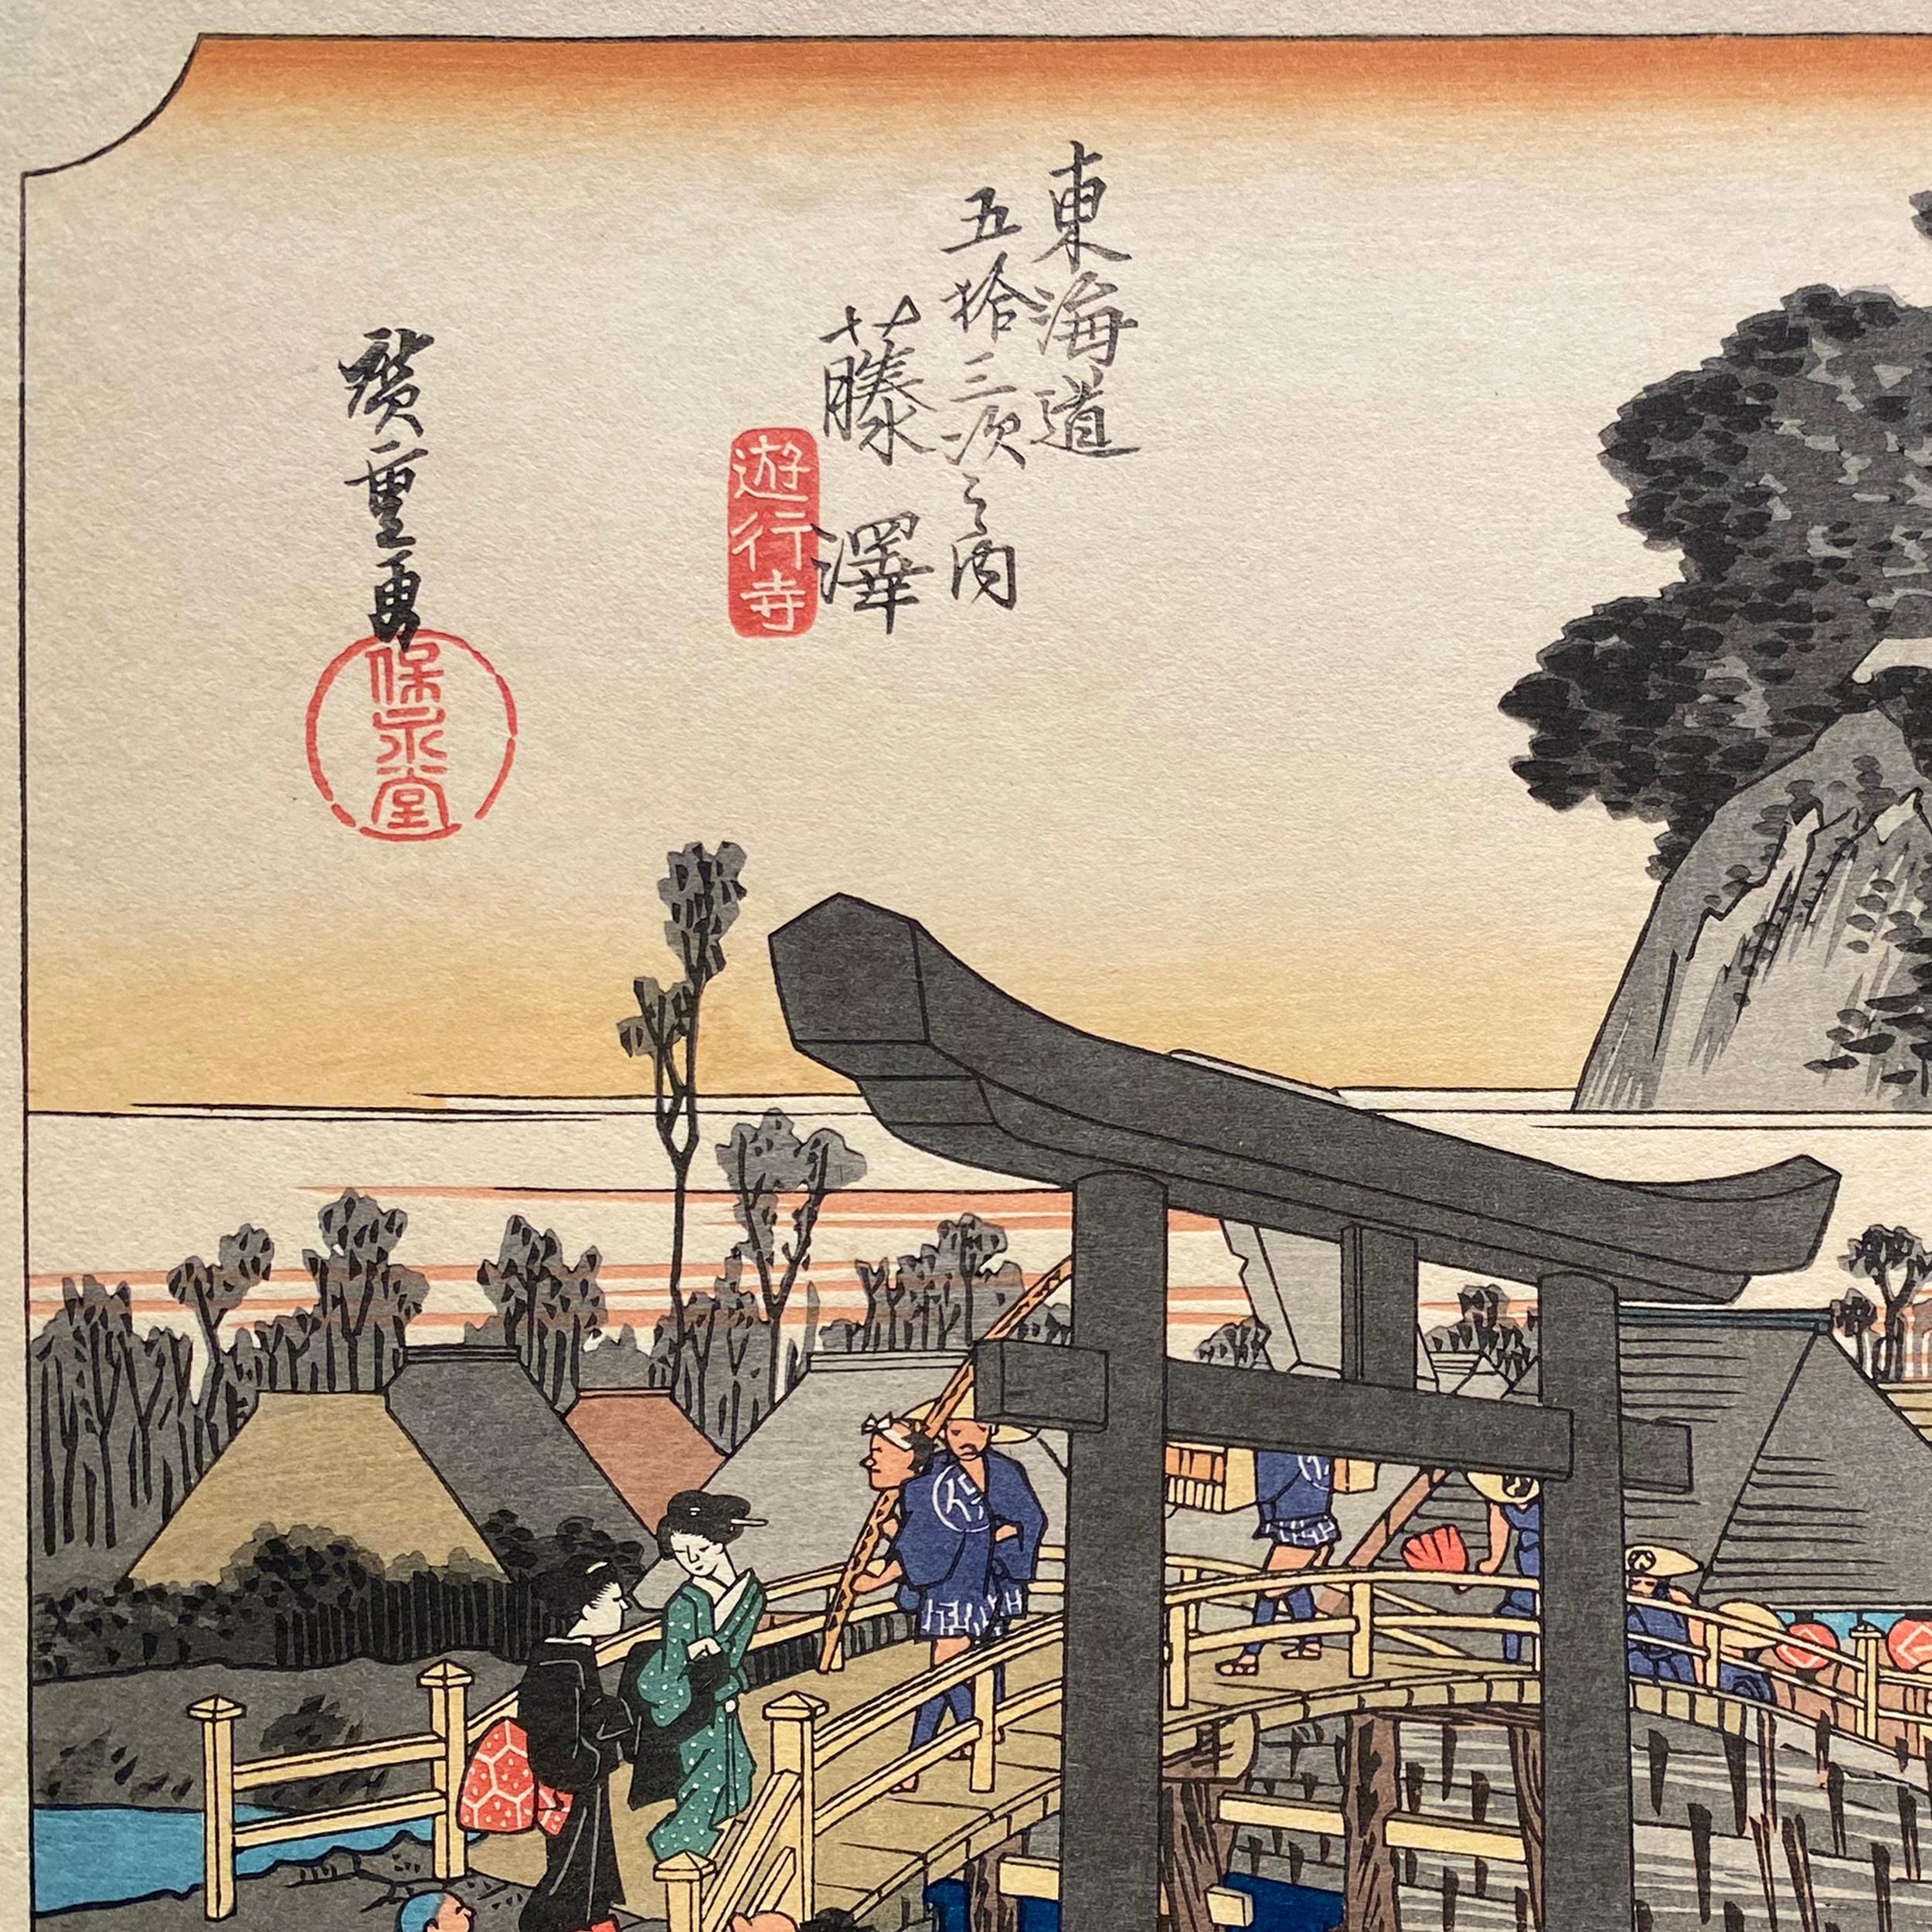 'View of Fujisawa', After Utagawa Hiroshige 歌川廣重, Ukiyo-e Woodblock, Tokaido - Print by Utagawa Hiroshige (Ando Hiroshige)